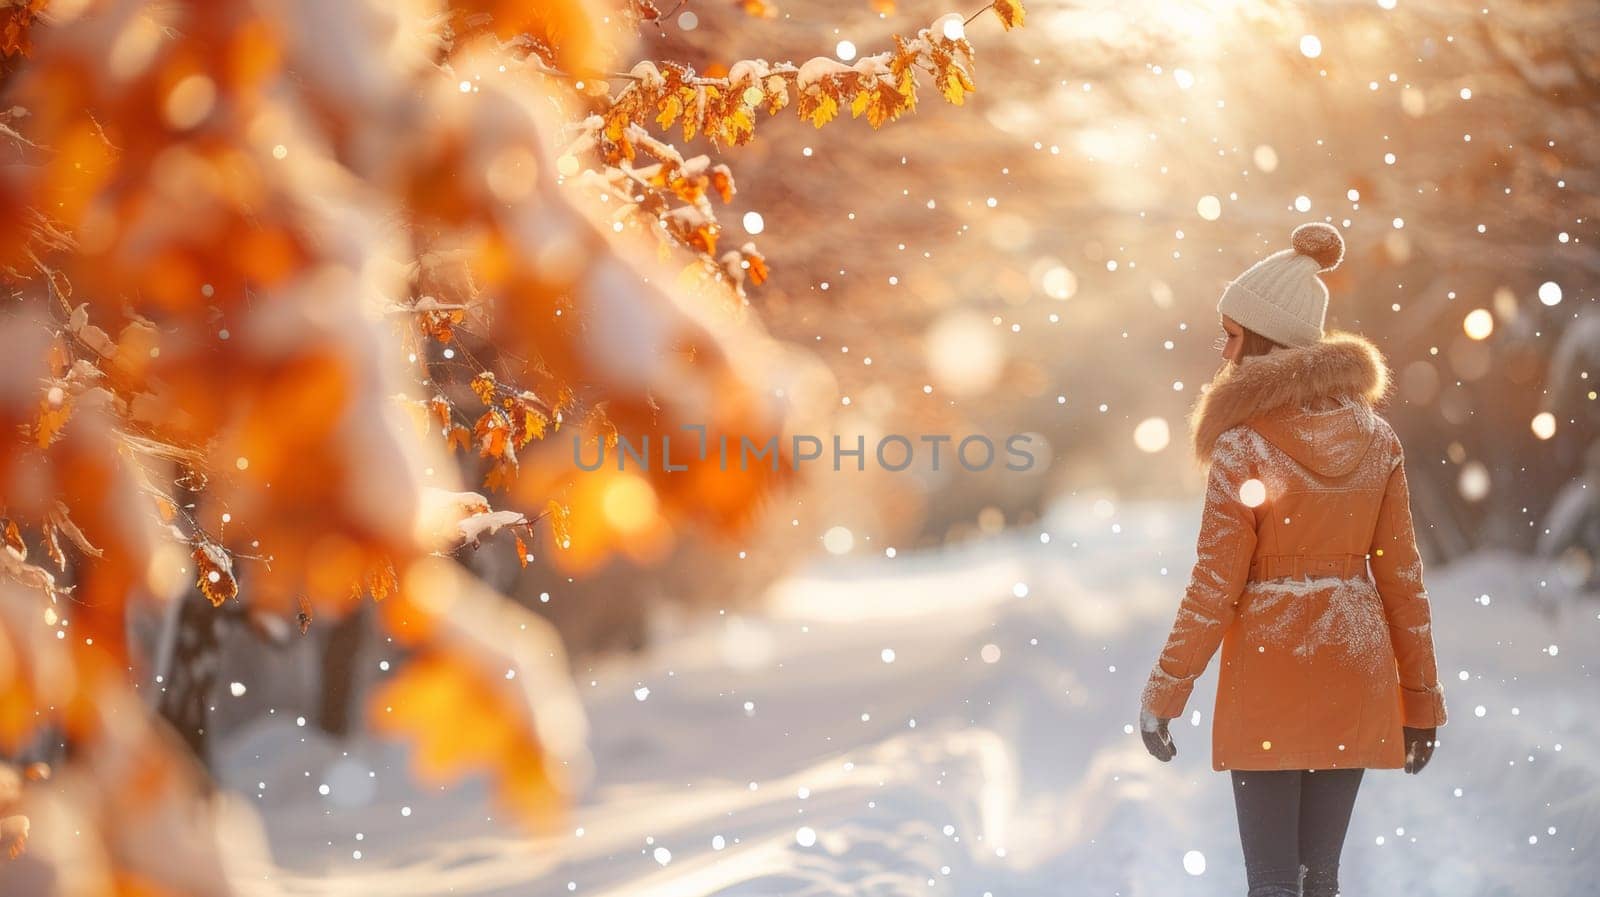 A woman walking down a snowy path in an orange coat